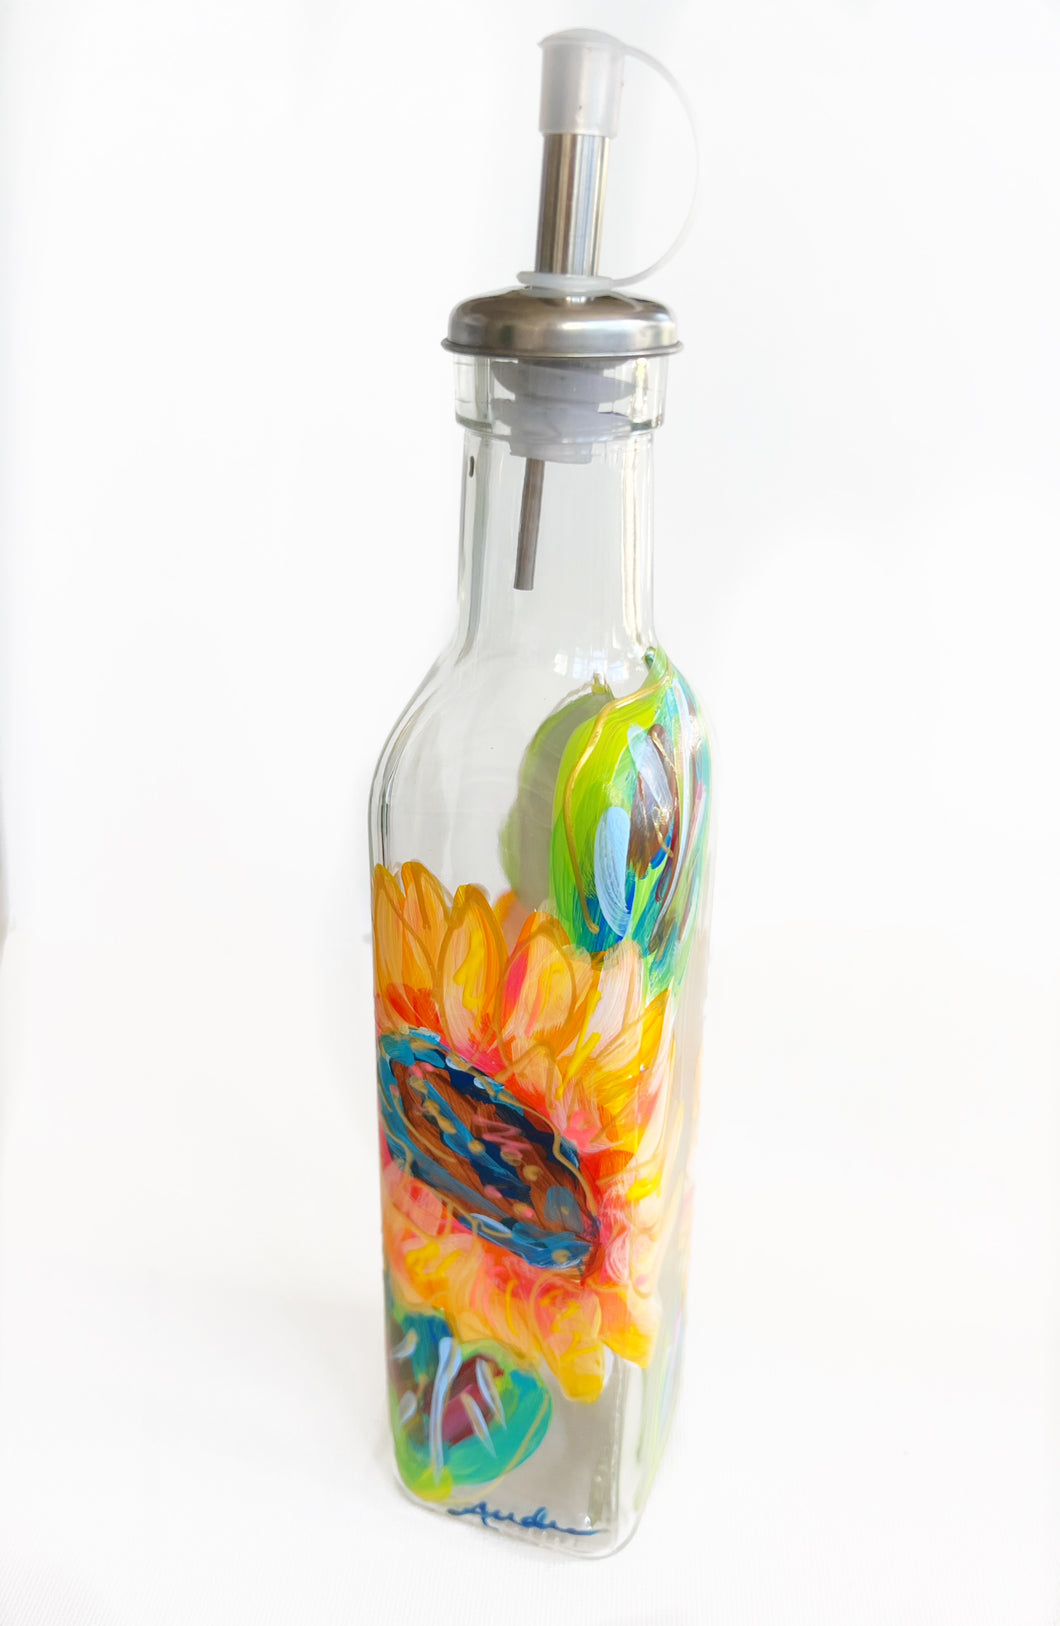 Sunflower Glass Oil and Vinegar Bottle with Stopper